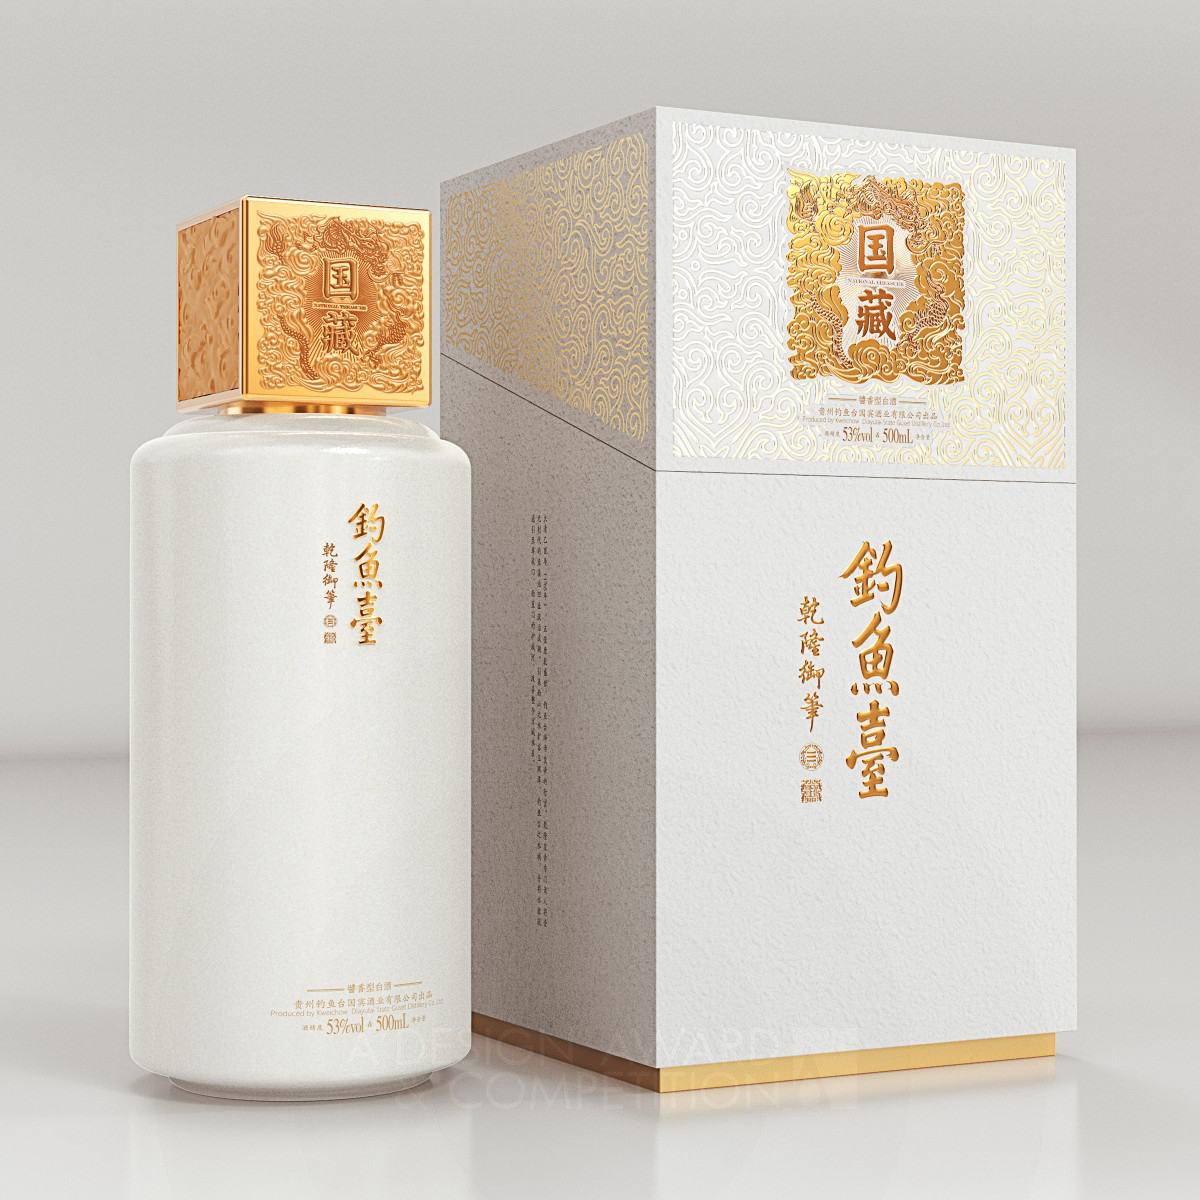 Diaoyutai Liquor Packaging Design by Wei Dai